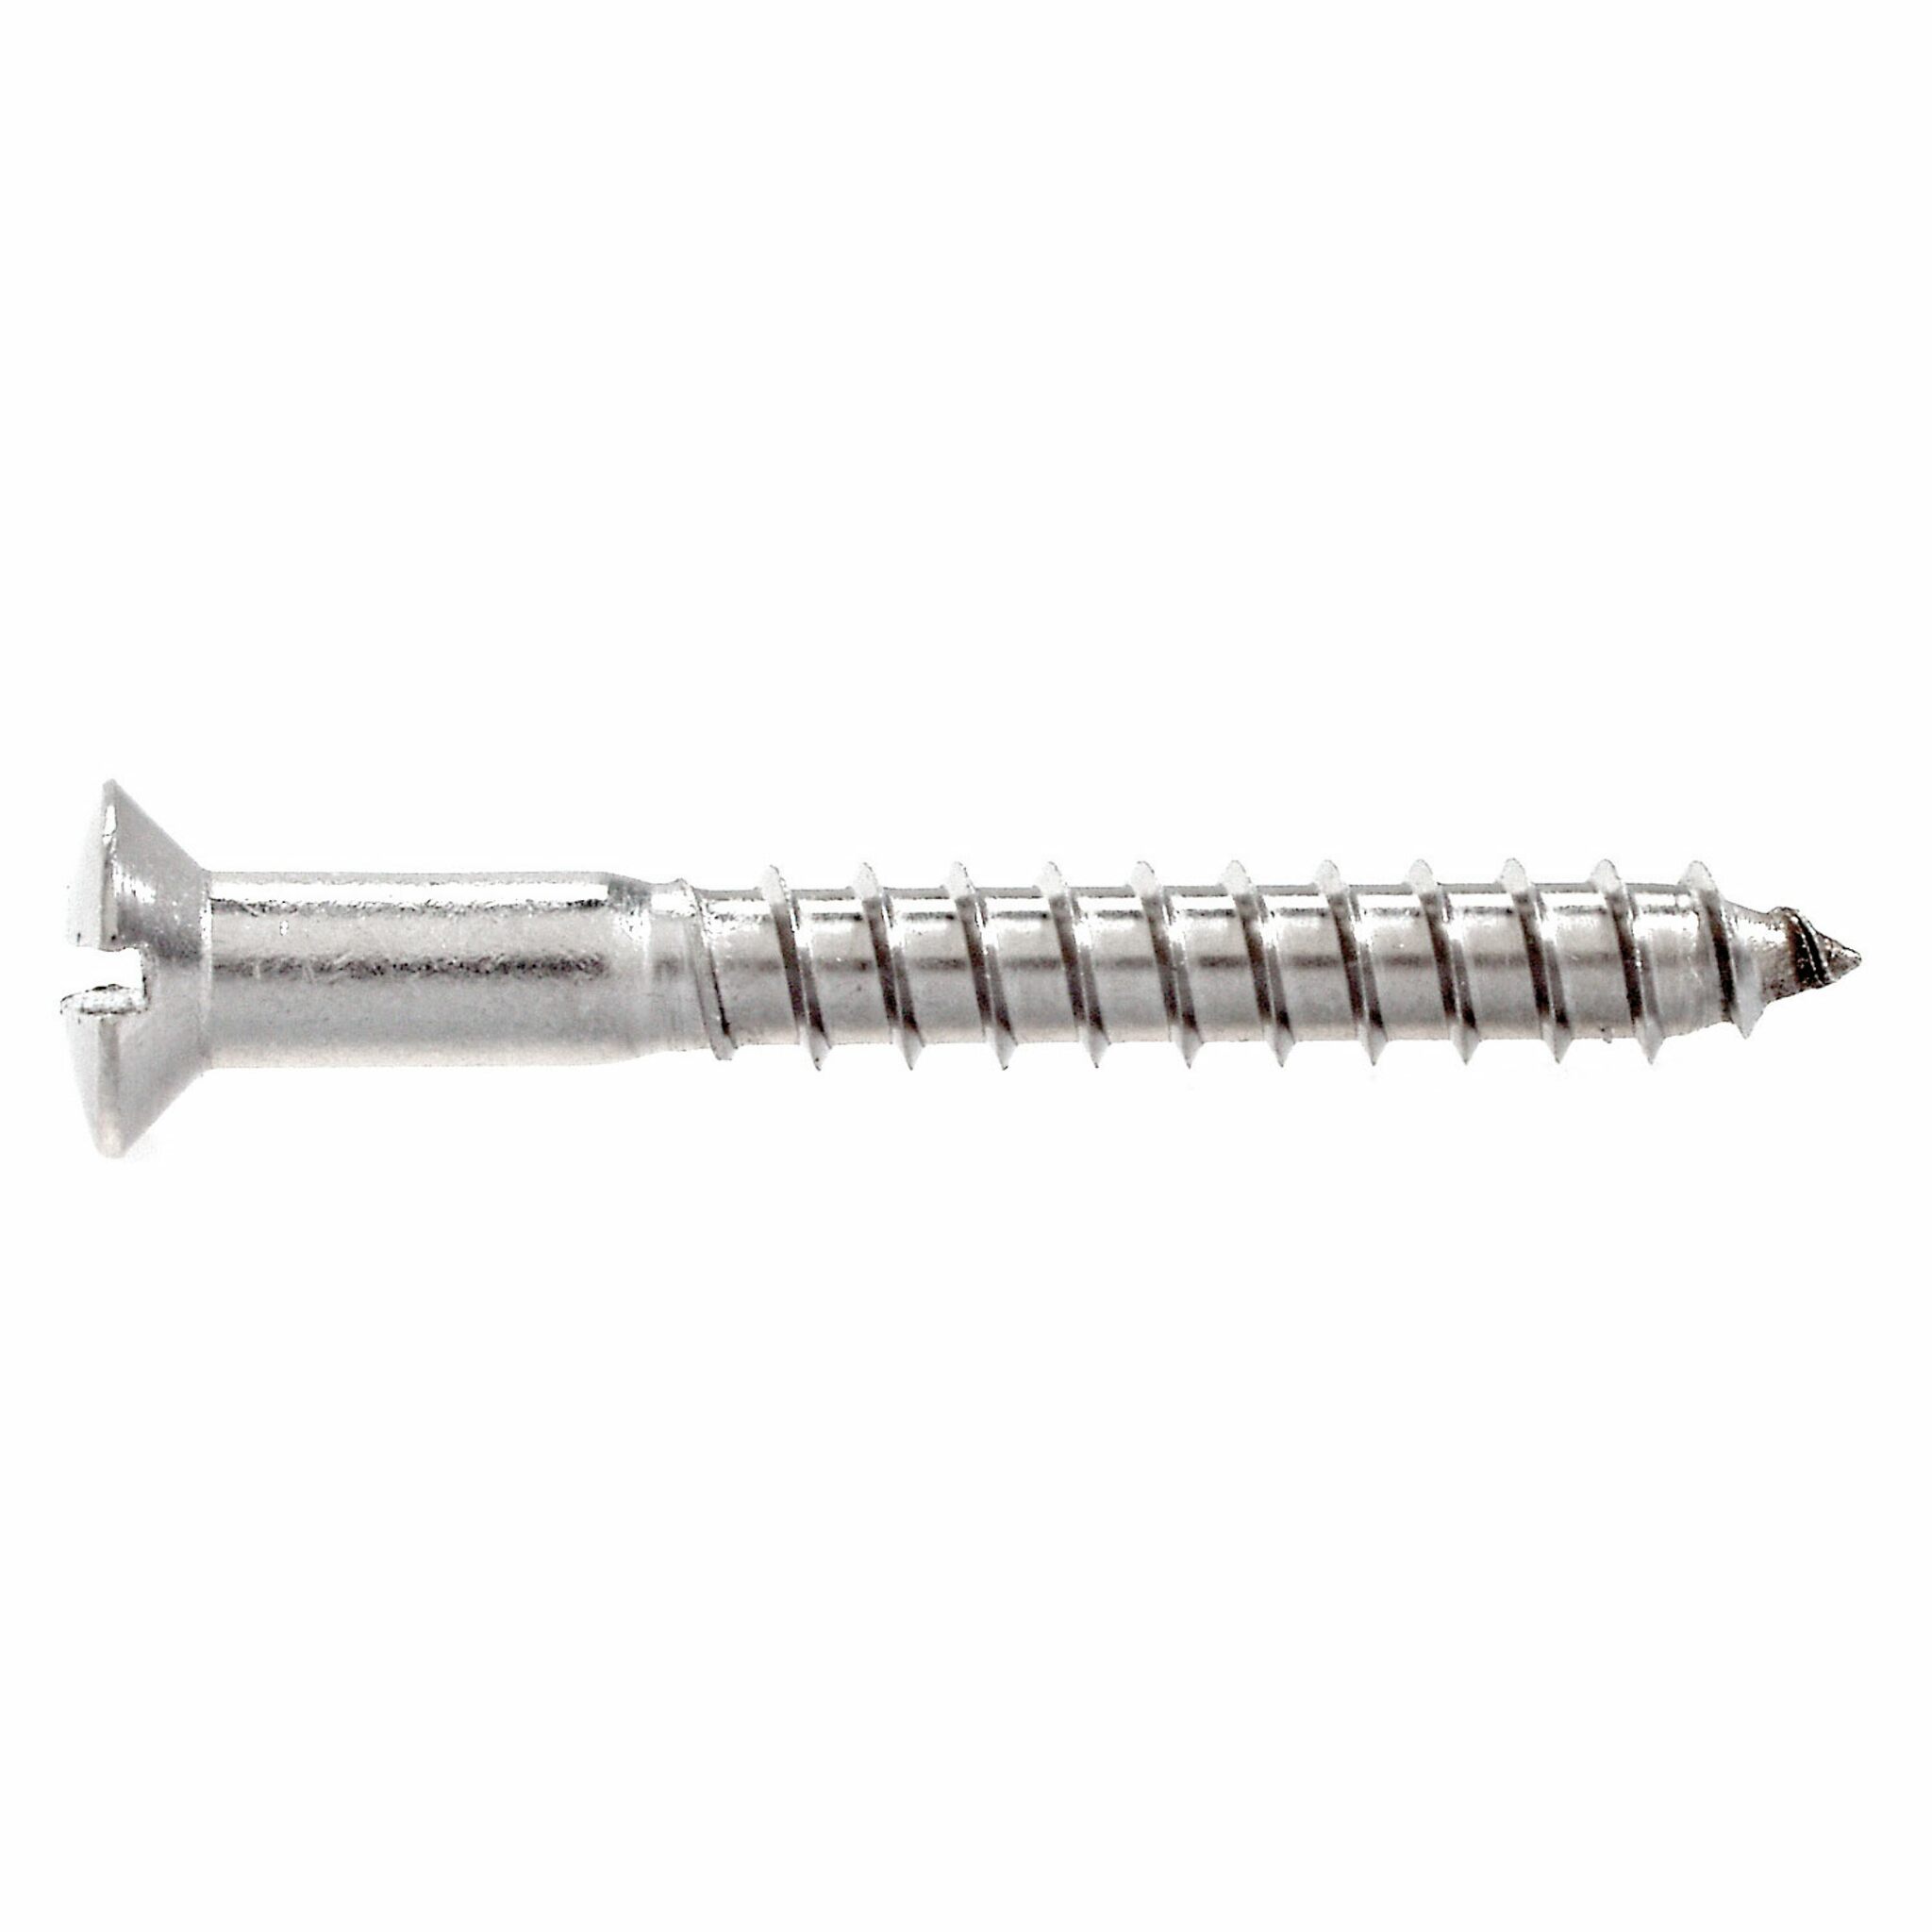 Countersunk head wood screw (DIN 95-A4)